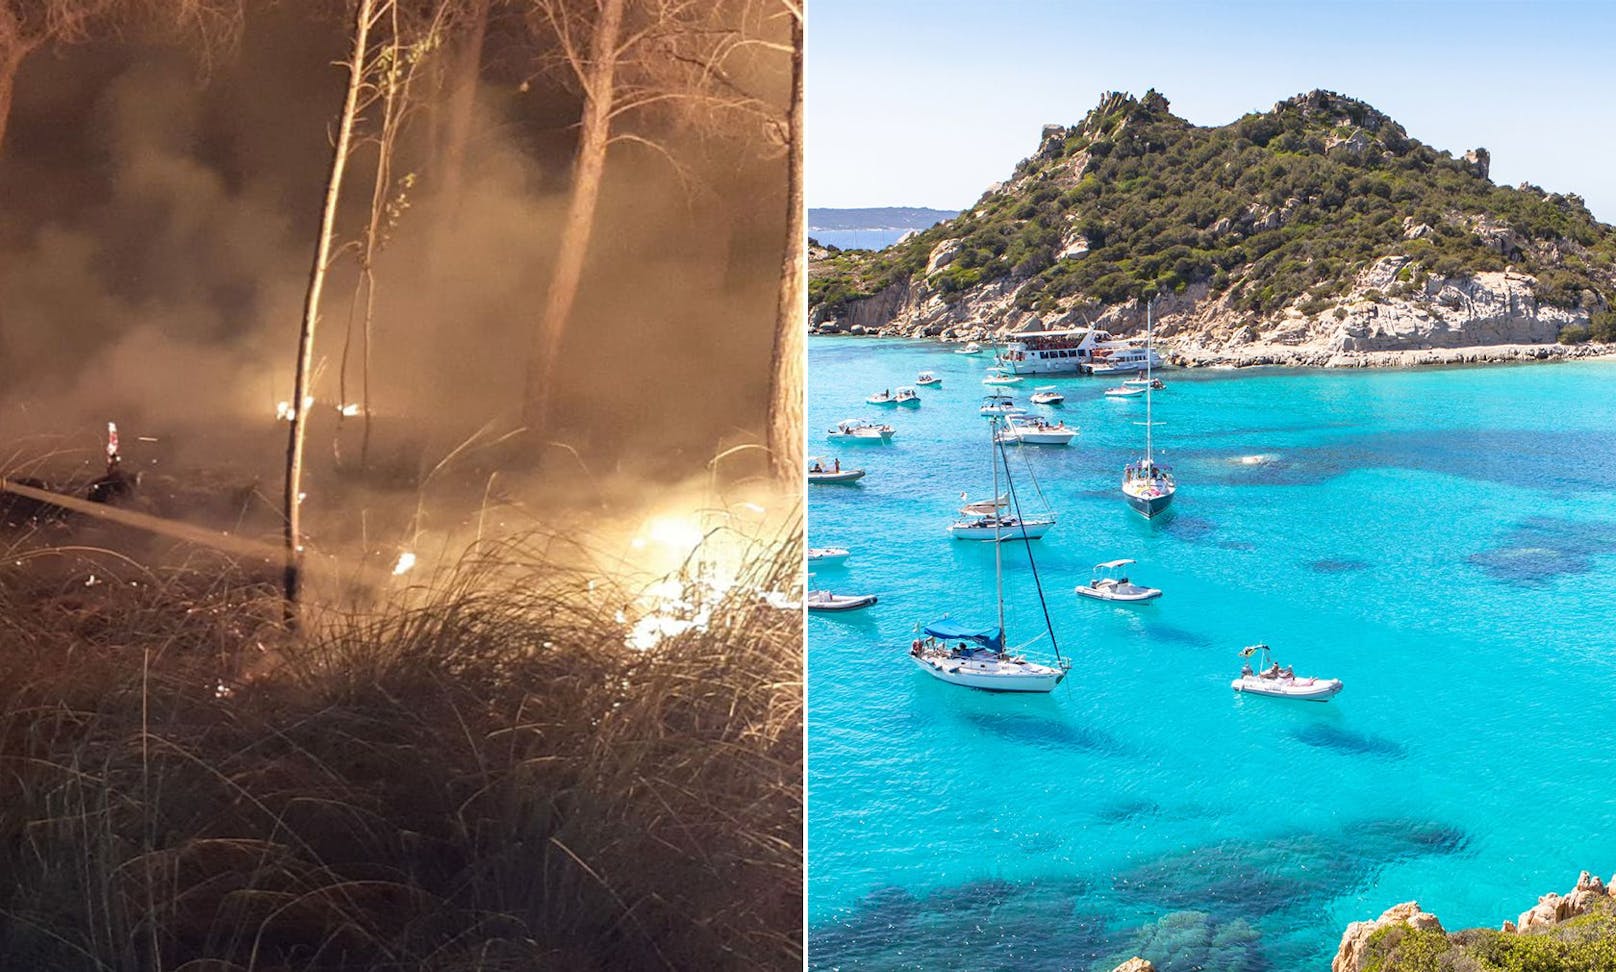 In Sardinien wurden die Buschbrände gelegt, weshalb nun strenge Kontrollen im freien Land durchgeführt werden.&nbsp;